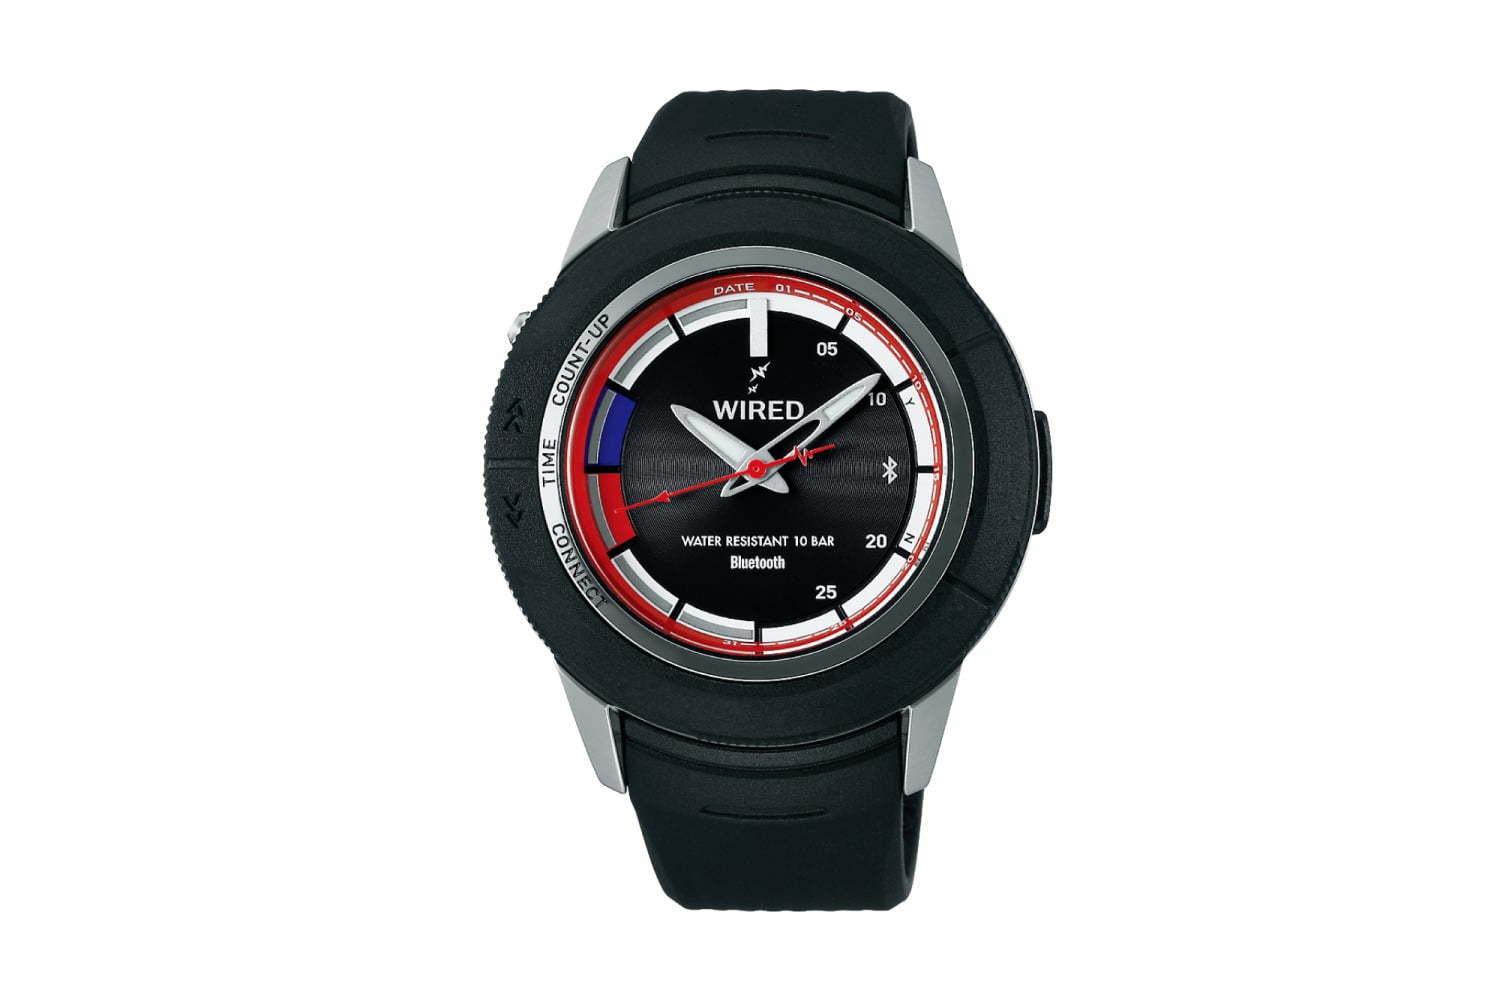 ウィズ リミテッド×セイコー「ワイアード WW」の腕時計“トリコロールカラー”ダイヤルの限定モデル 